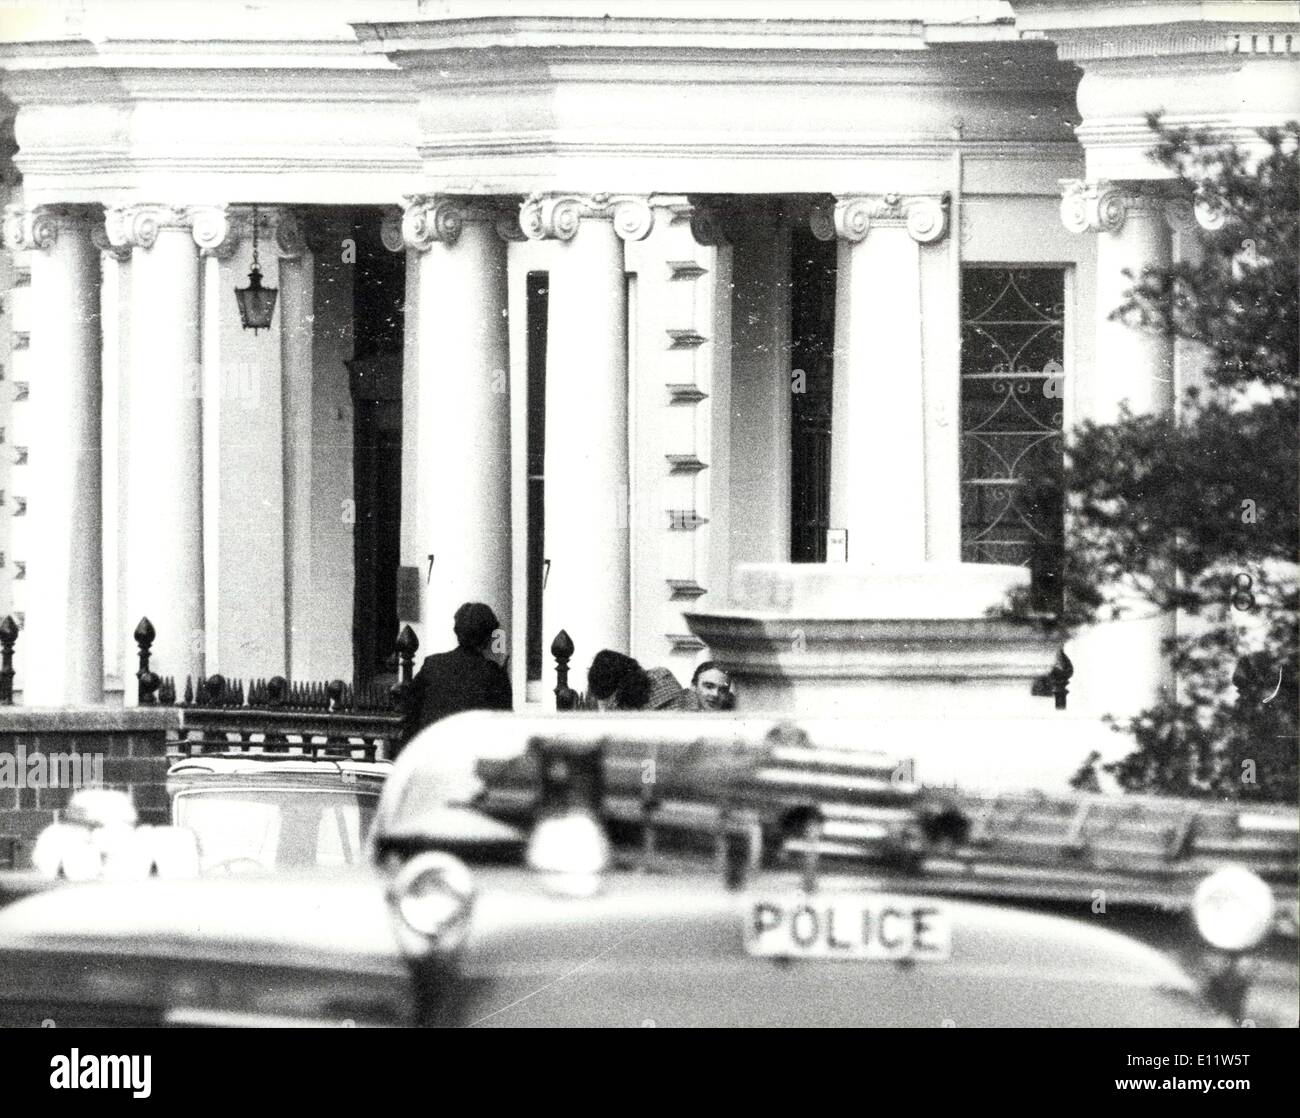 Apr. 30, 1980 - Iran cittadini assumono ambasciata iraniana a Londra. Armati di cittadini Iran ha assunto l'ambasciata iraniana a Londra oggi. Essi hanno preso i poliziotti in ostaggio, un connestabile armati con la Scozia il cantiere protezione diplomatica gruppo che era di guardia al di fuori dell'Ambasciata, e circa 20 membri del personale d'ambasciata. Gli scatti sono stati ascoltati dall'interno dell'edificio che ora è circondato da una trentina di poliziotti armati. La foto mostra: una scena guardando la parte anteriore dell'Ambasciata Iraniana come una donna viene prelevato dopo essere stato rilasciato dai banditi come ella si ammalò, lei è stato portato in ospedale. Foto Stock